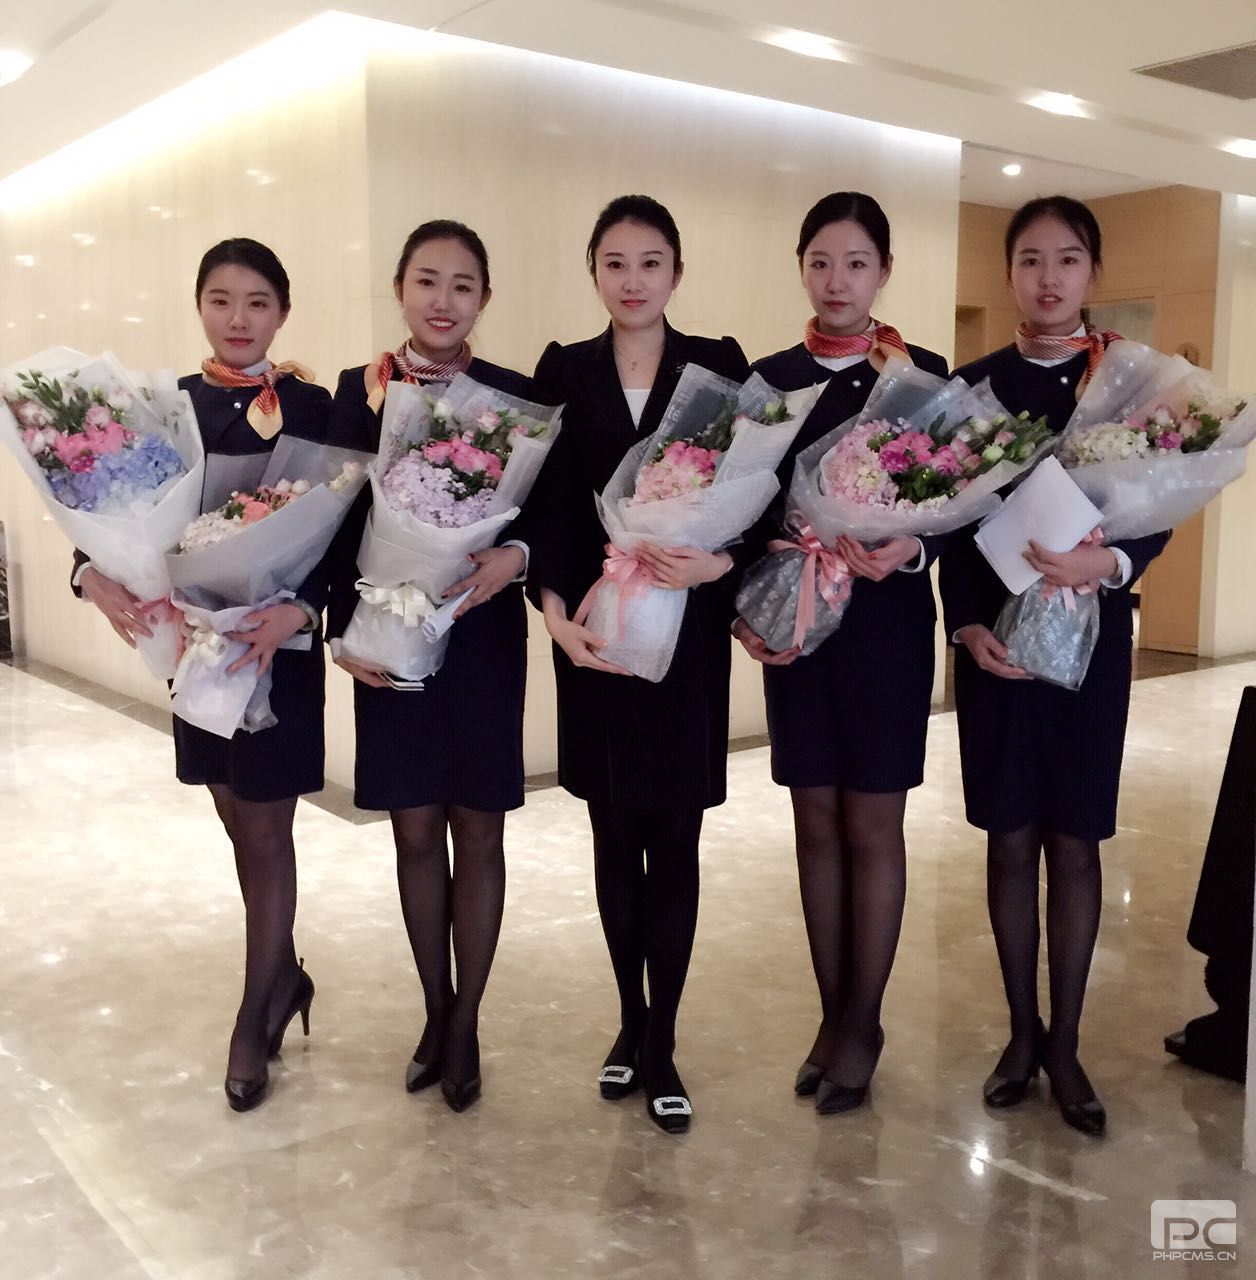 工作礼仪 - 接机 - 北京银燕航空有限公司-中文